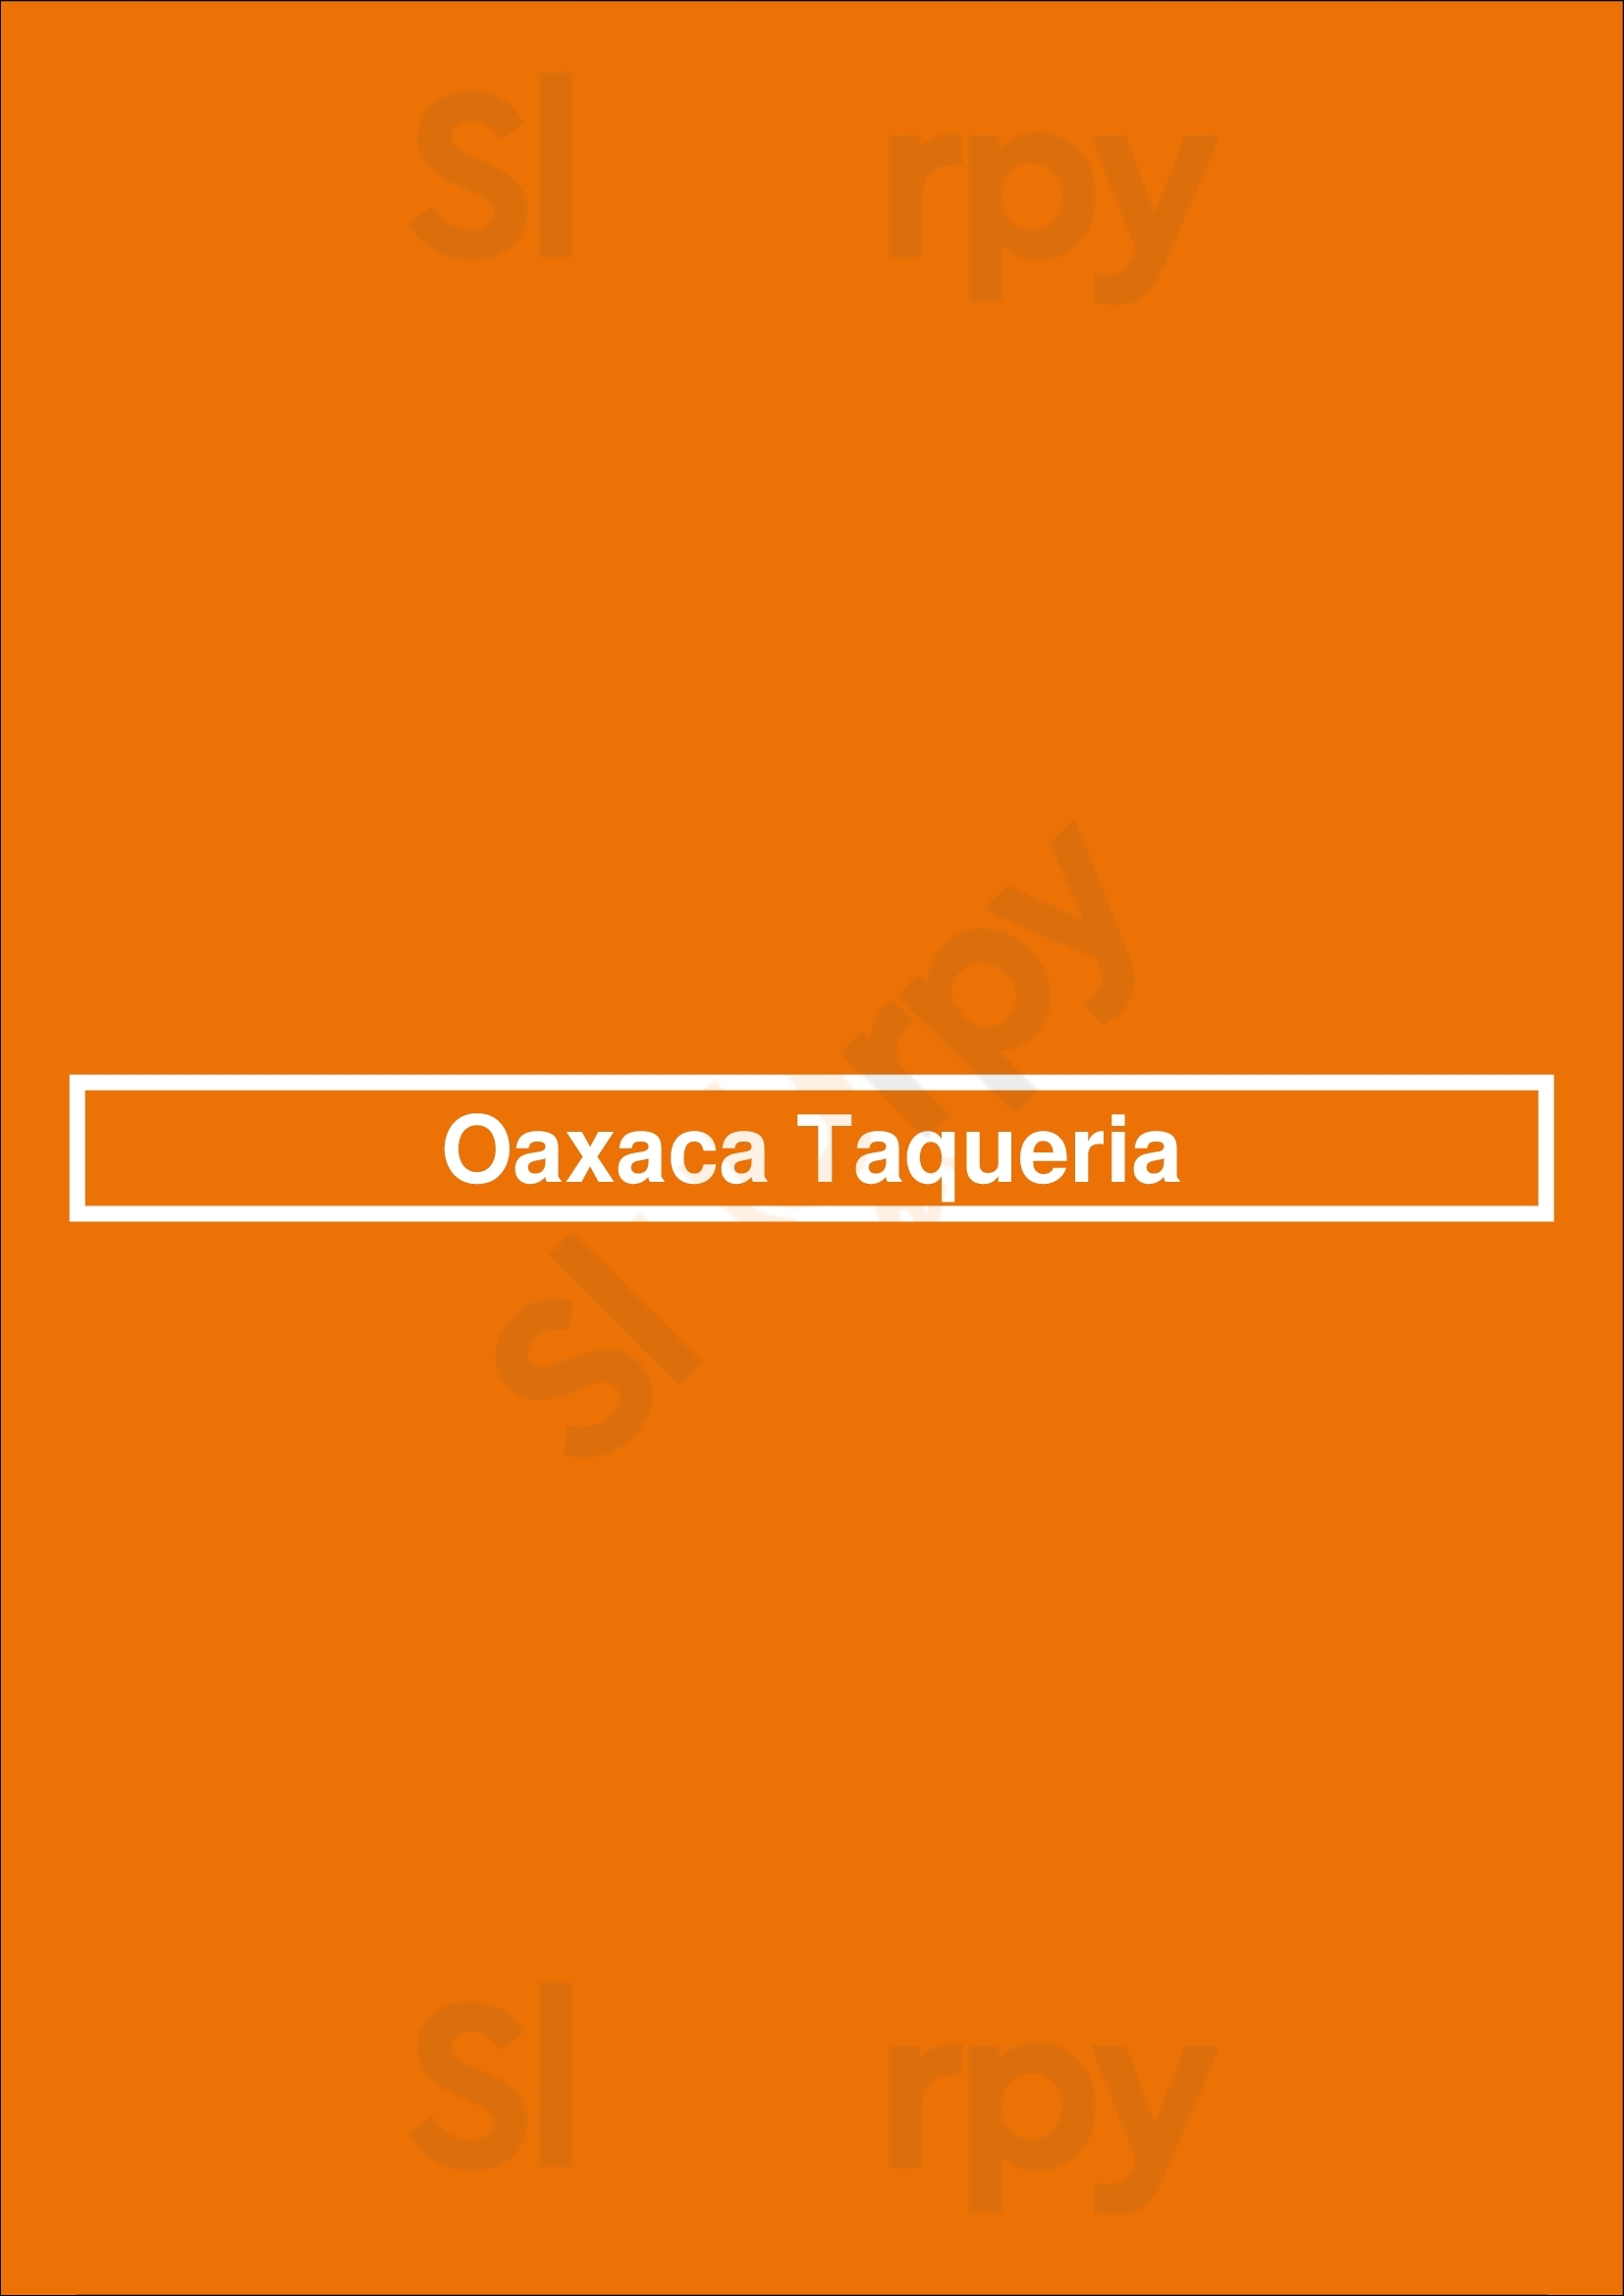 Oaxaca Taqueria Brooklyn Menu - 1